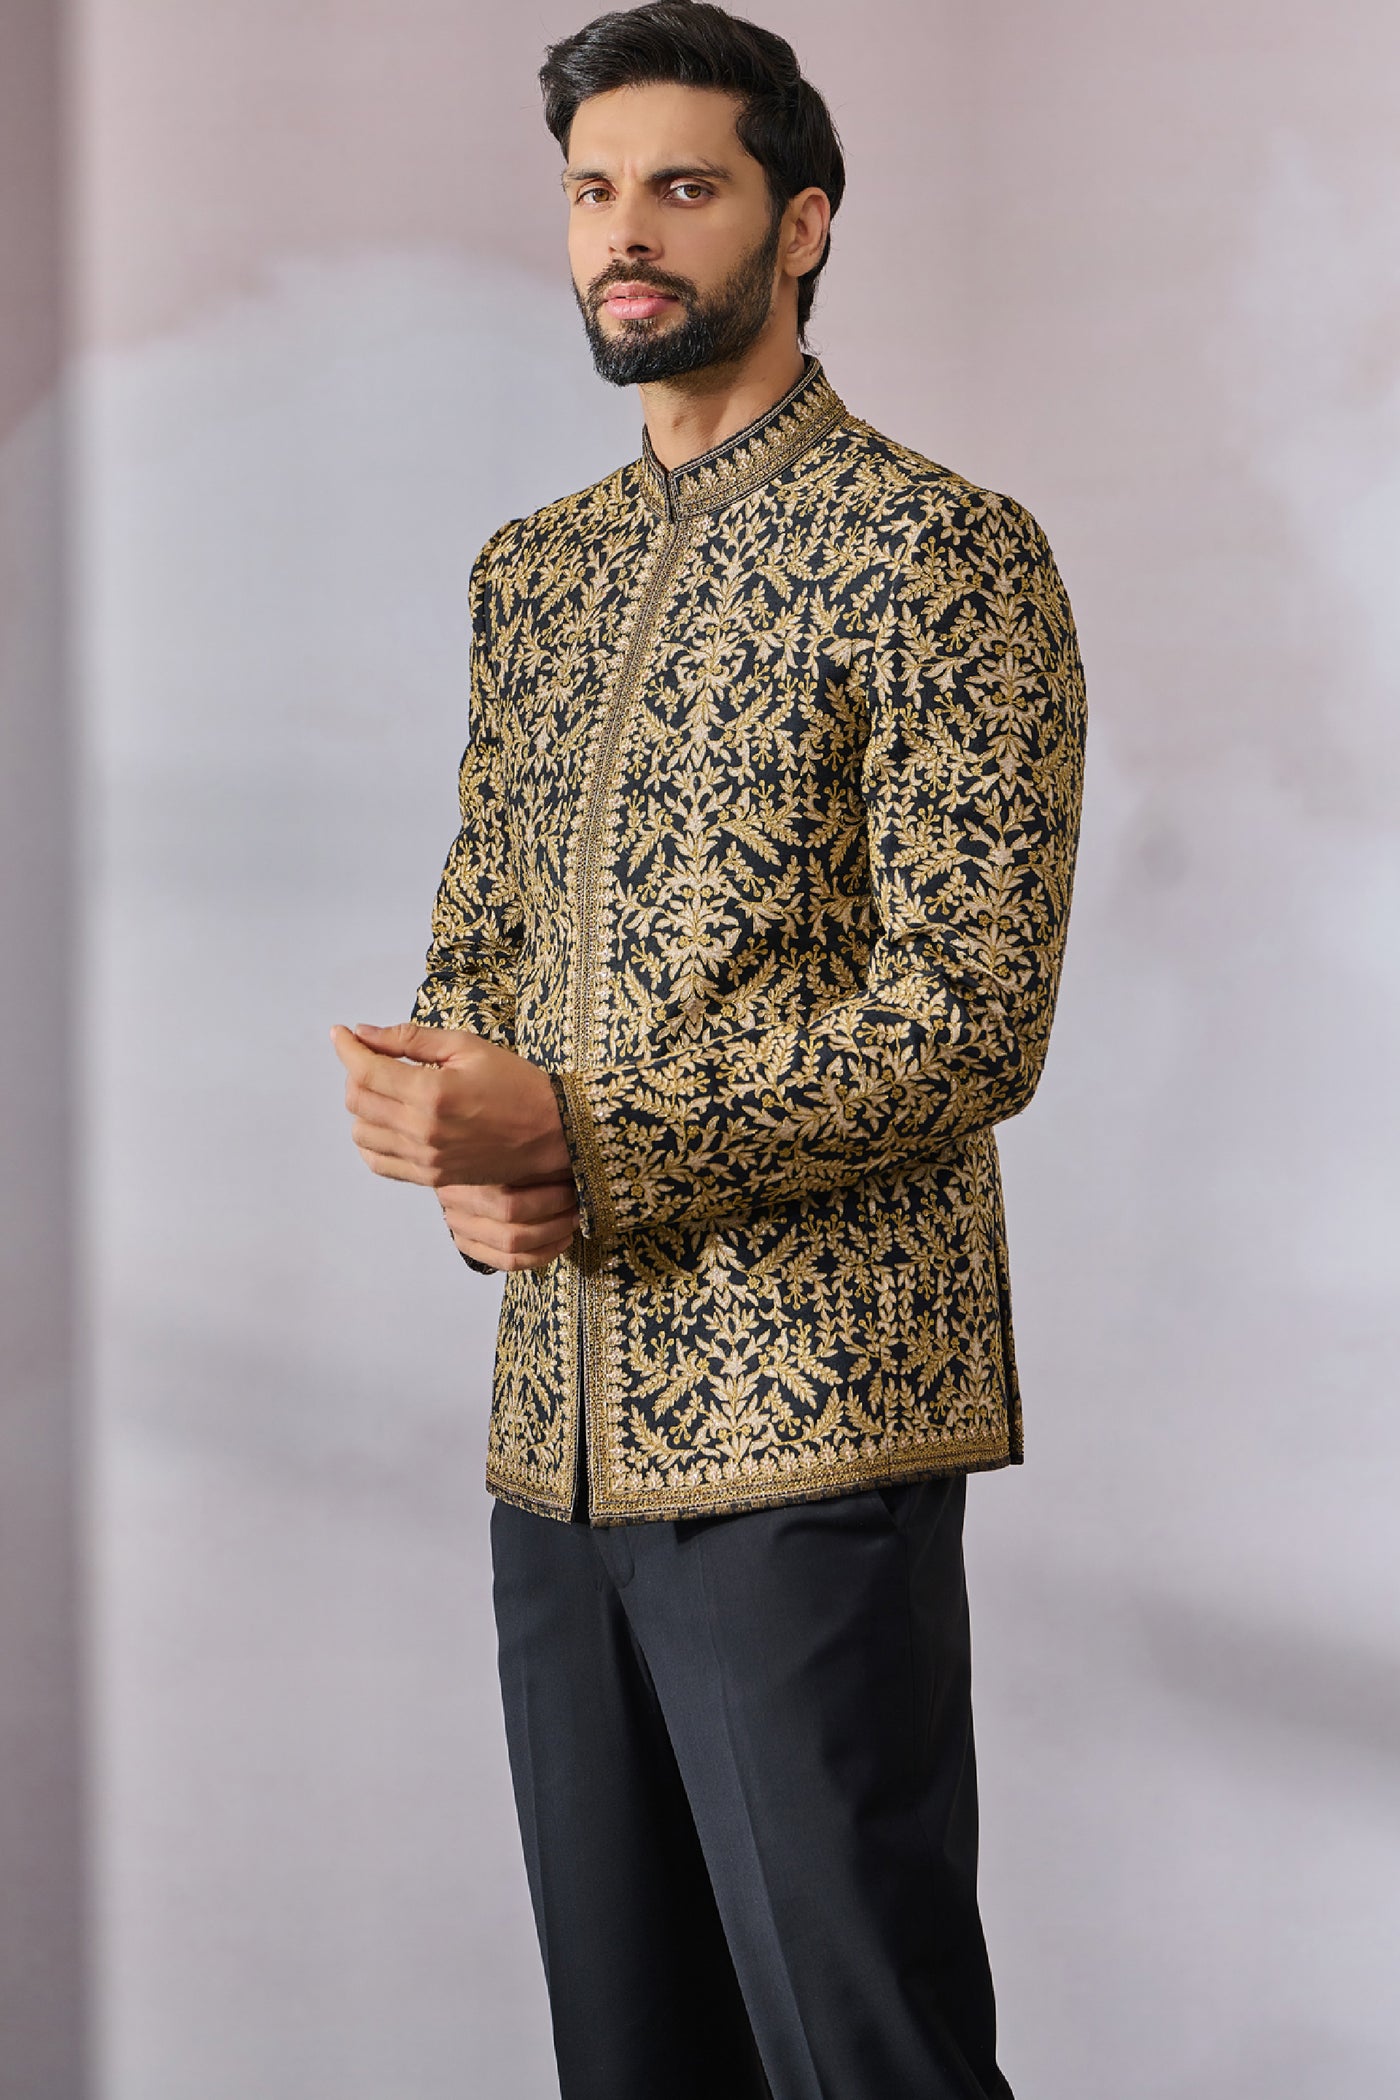 Tarun Tahiliani Menswear Bandgala Shirt Trouser indian designer wear online shopping melange singapore